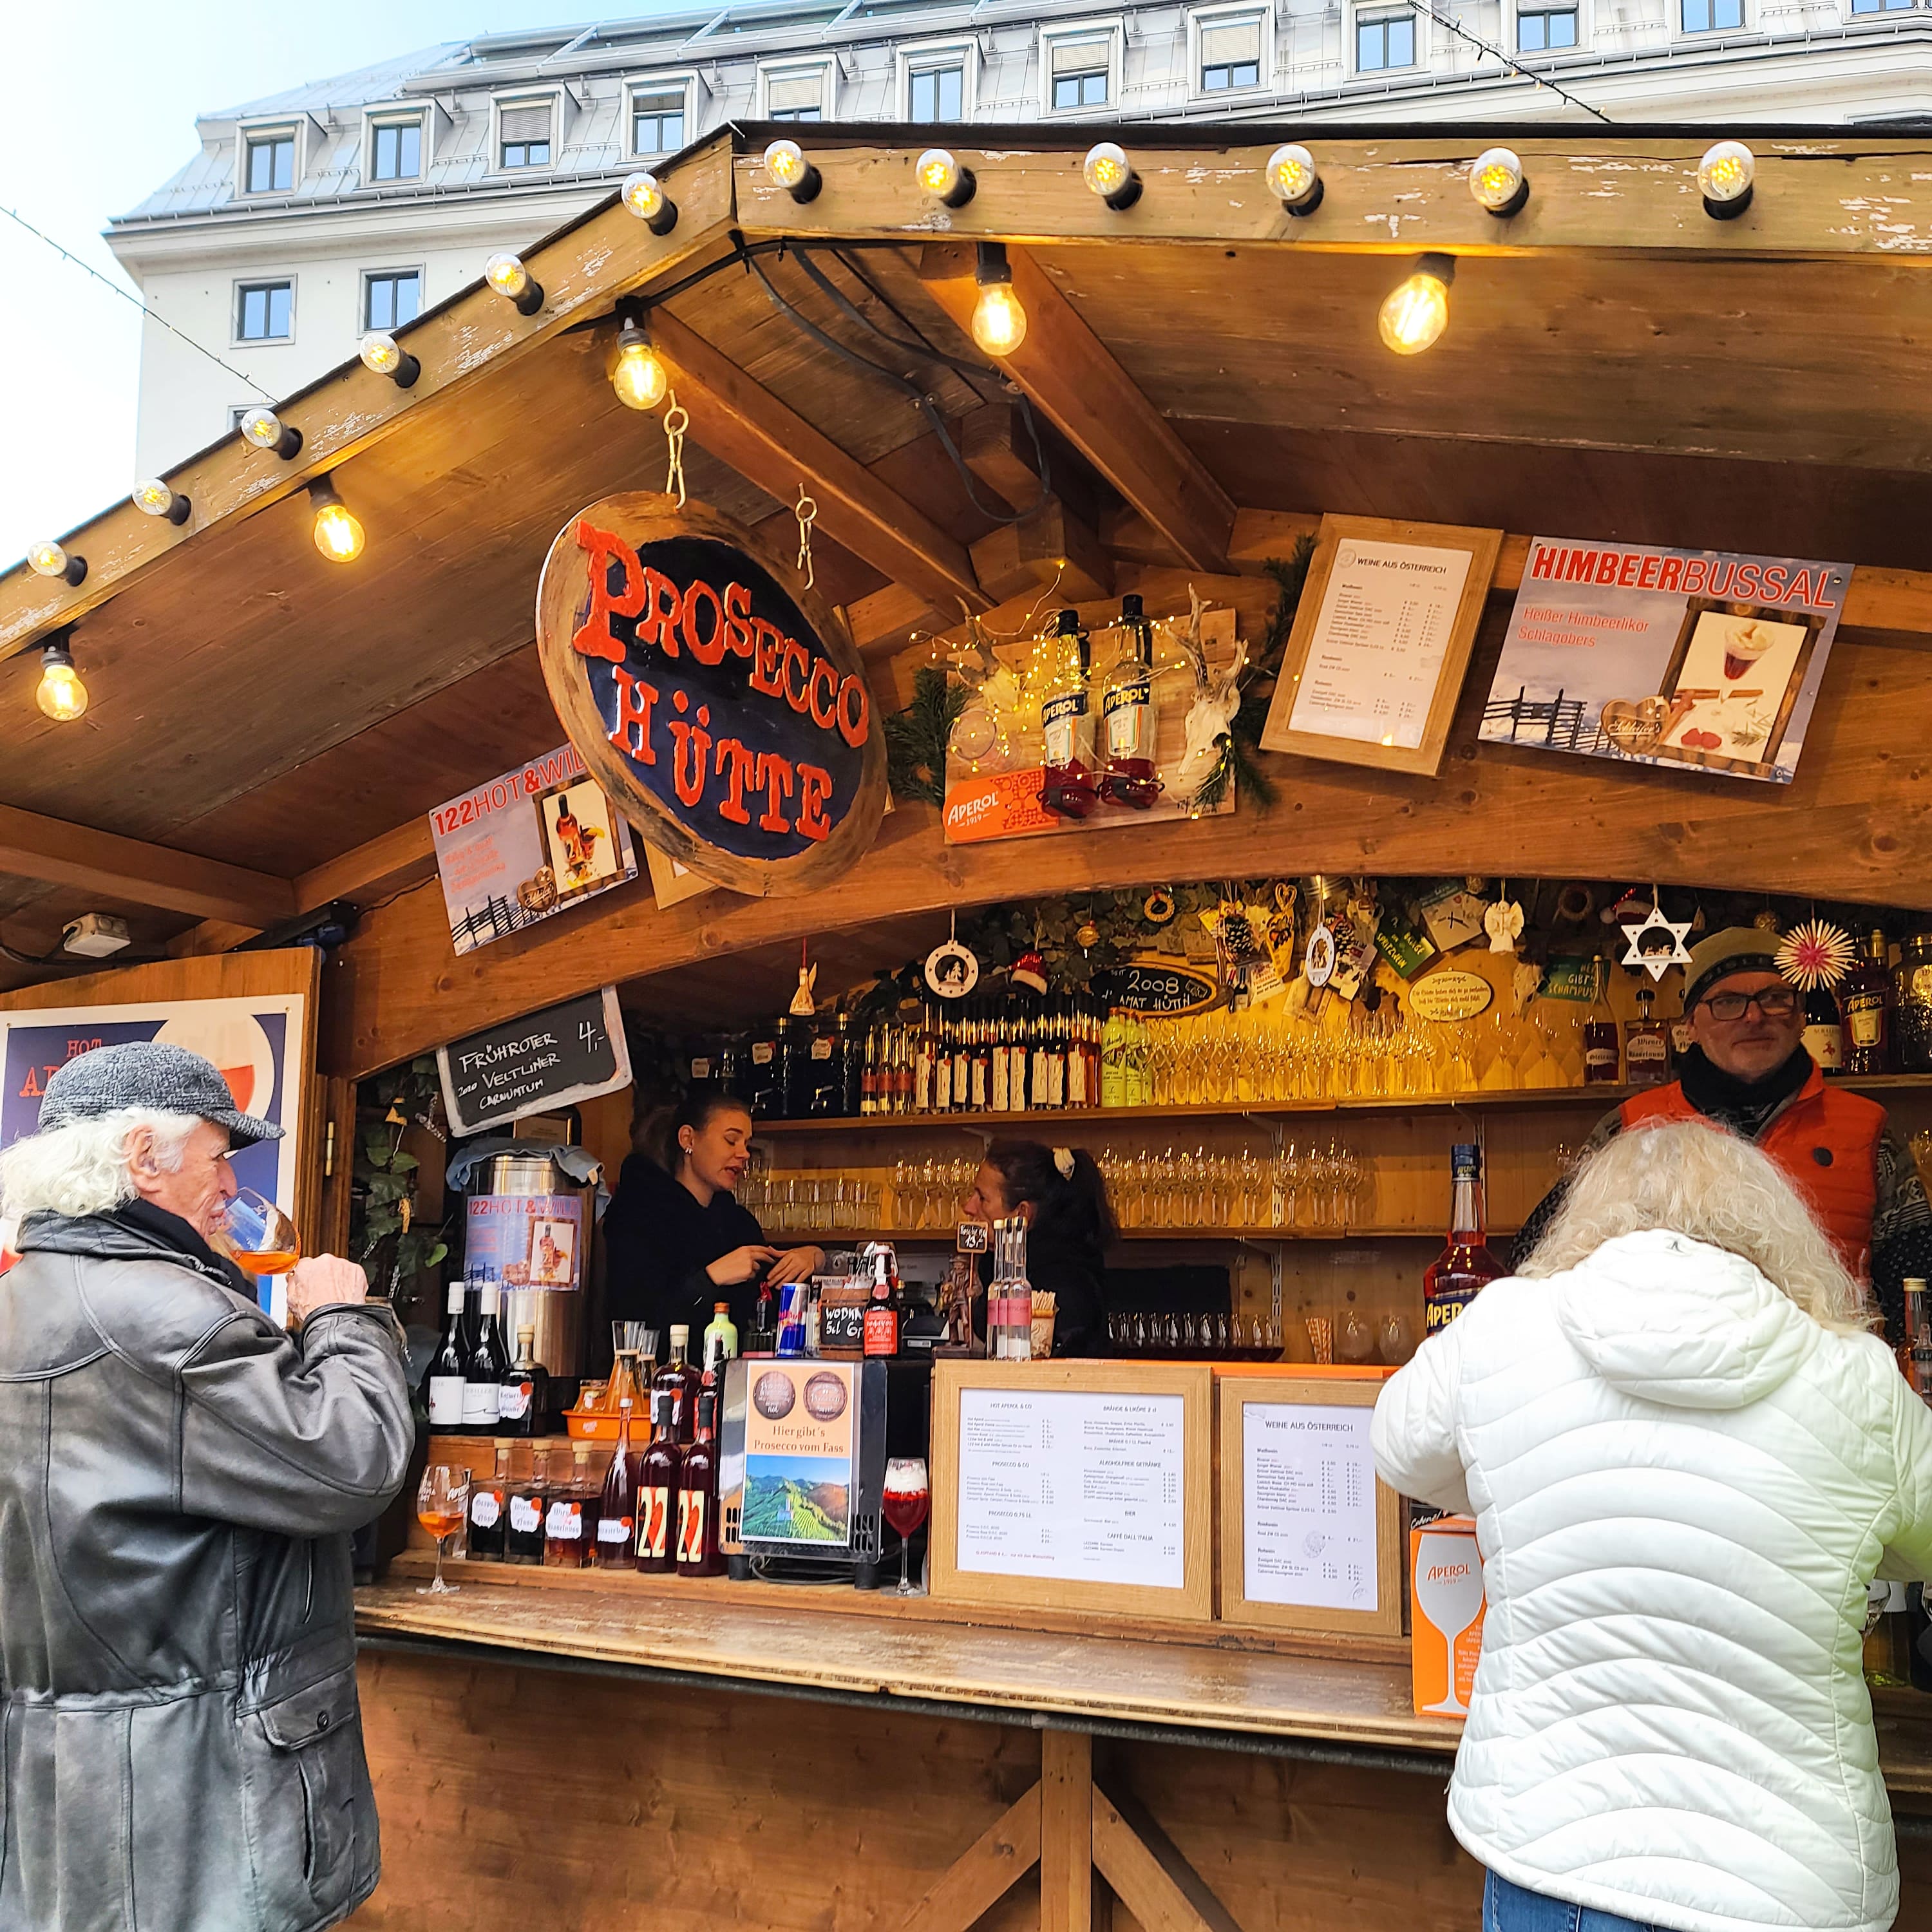 Christmas Markets in Vienna